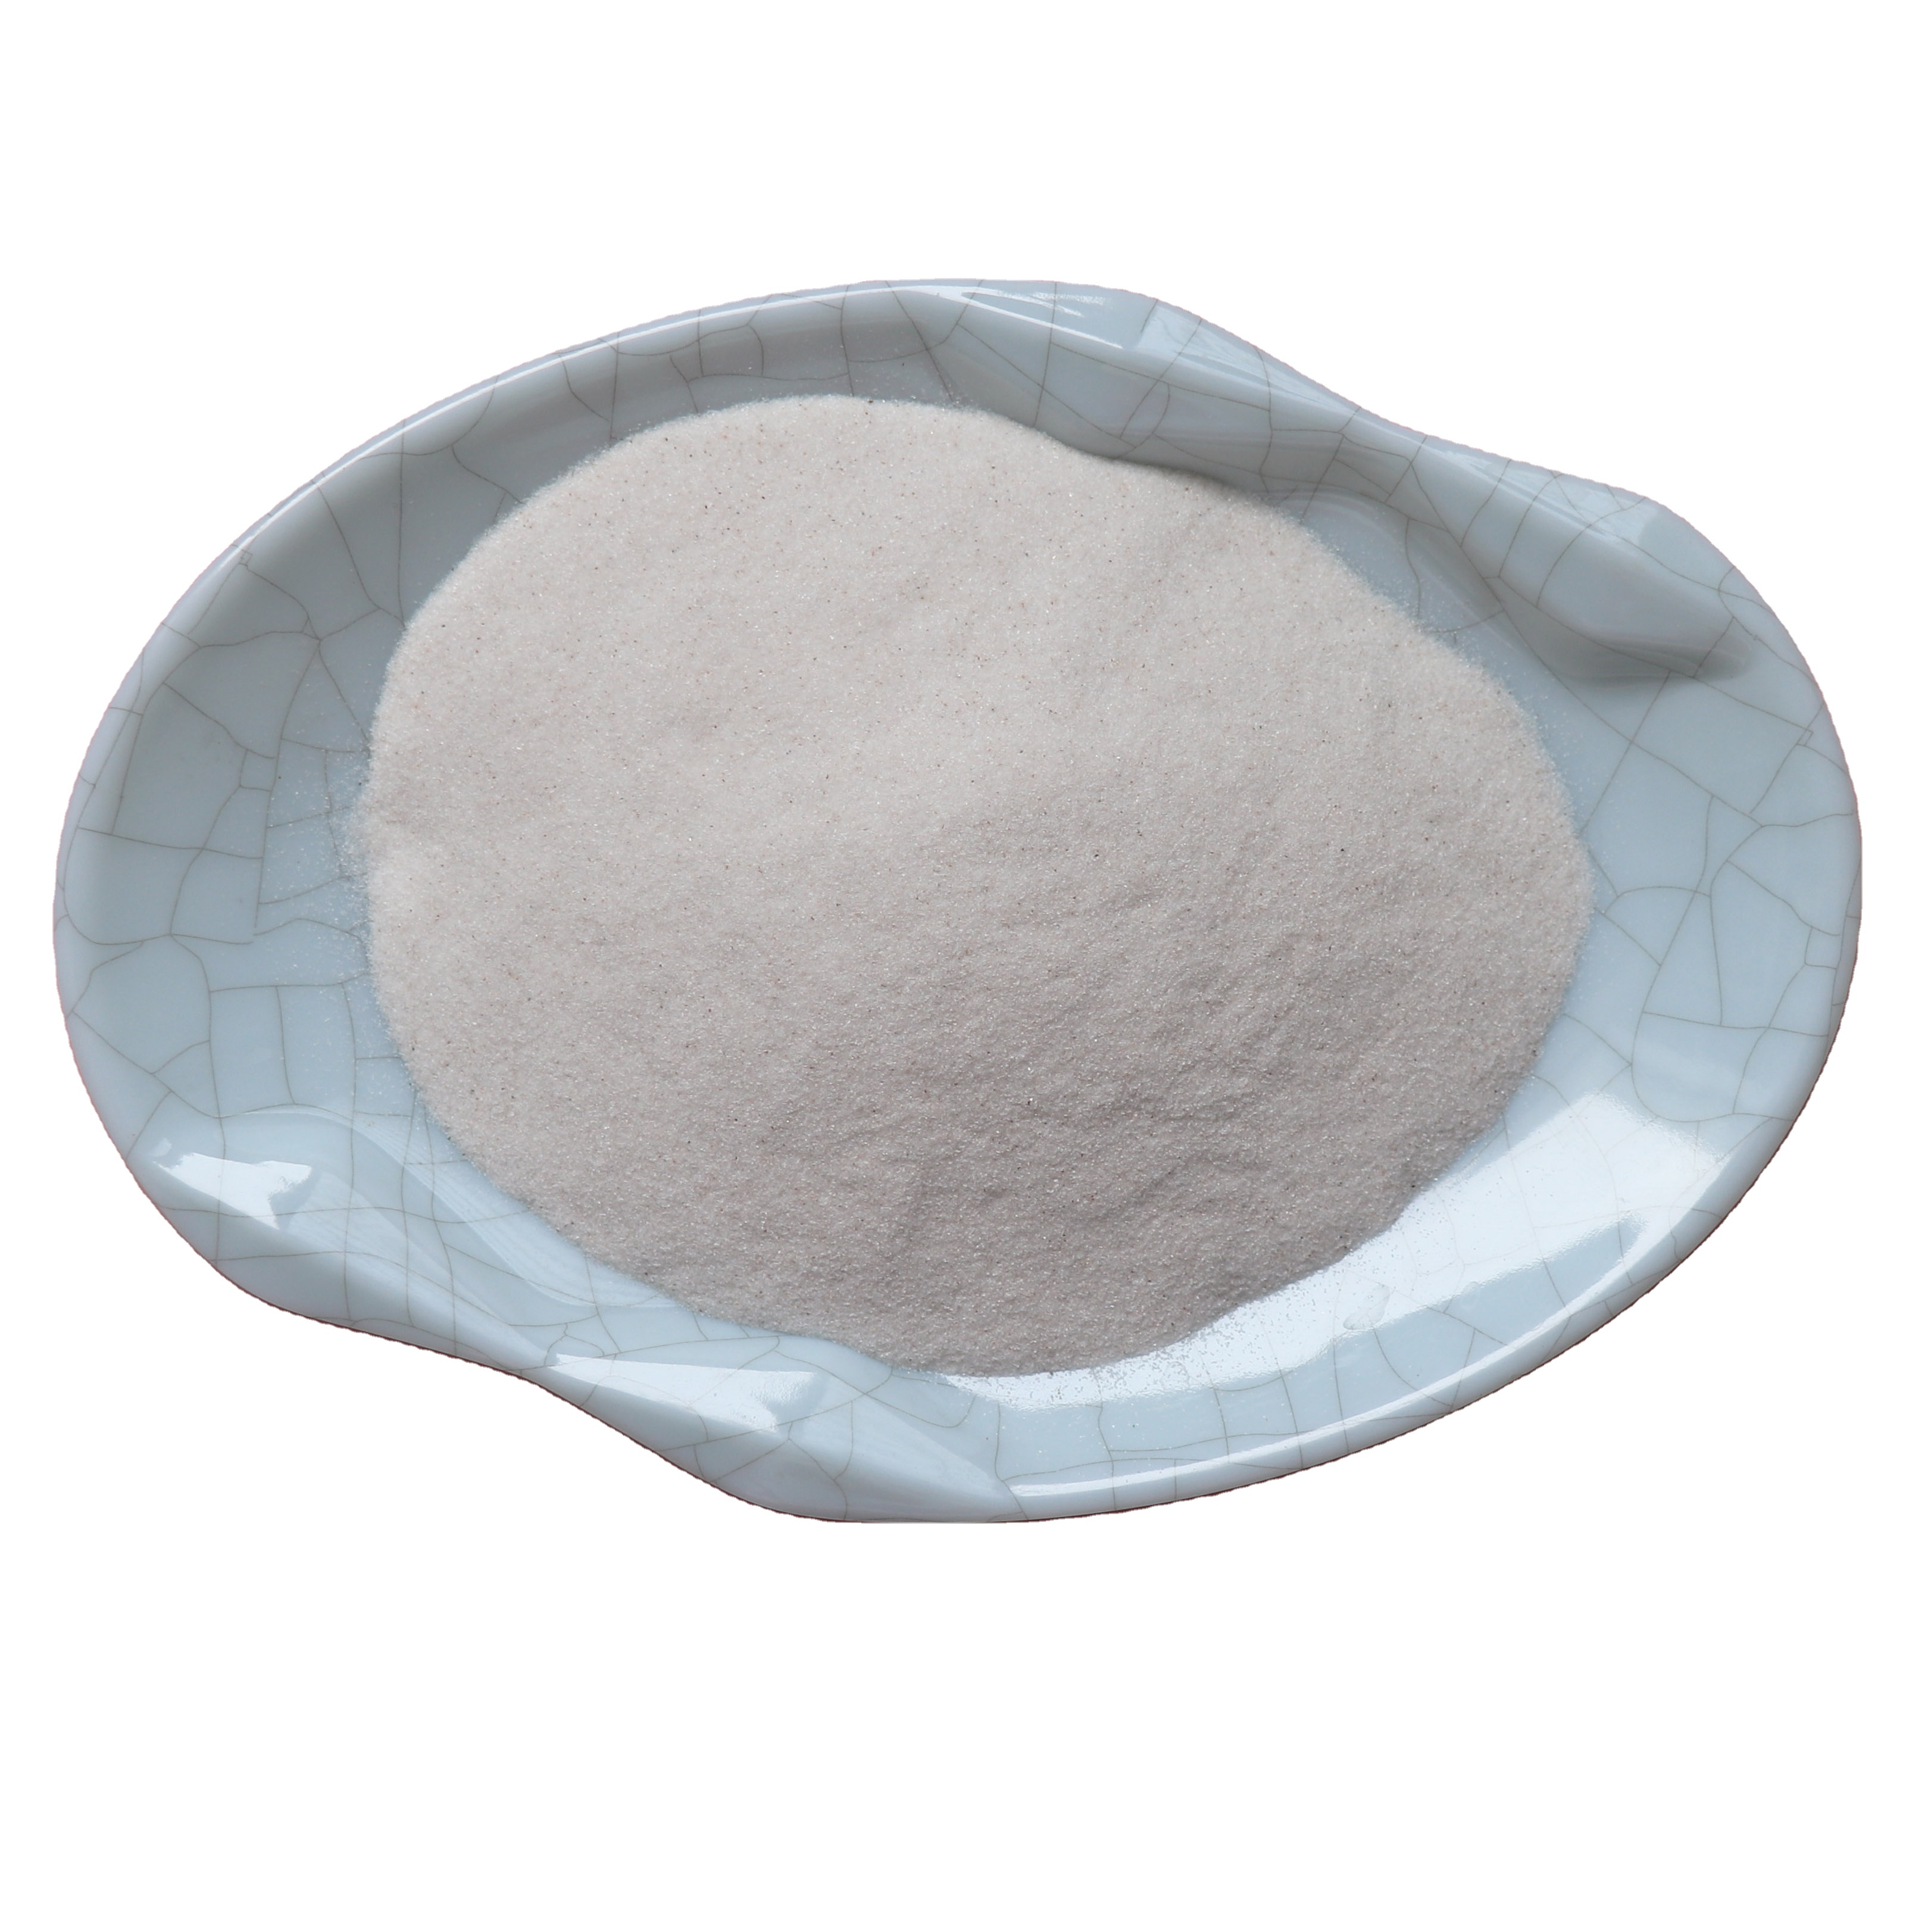 50-150 Micron high grade fused powder pure fine white colored quartz silica sand